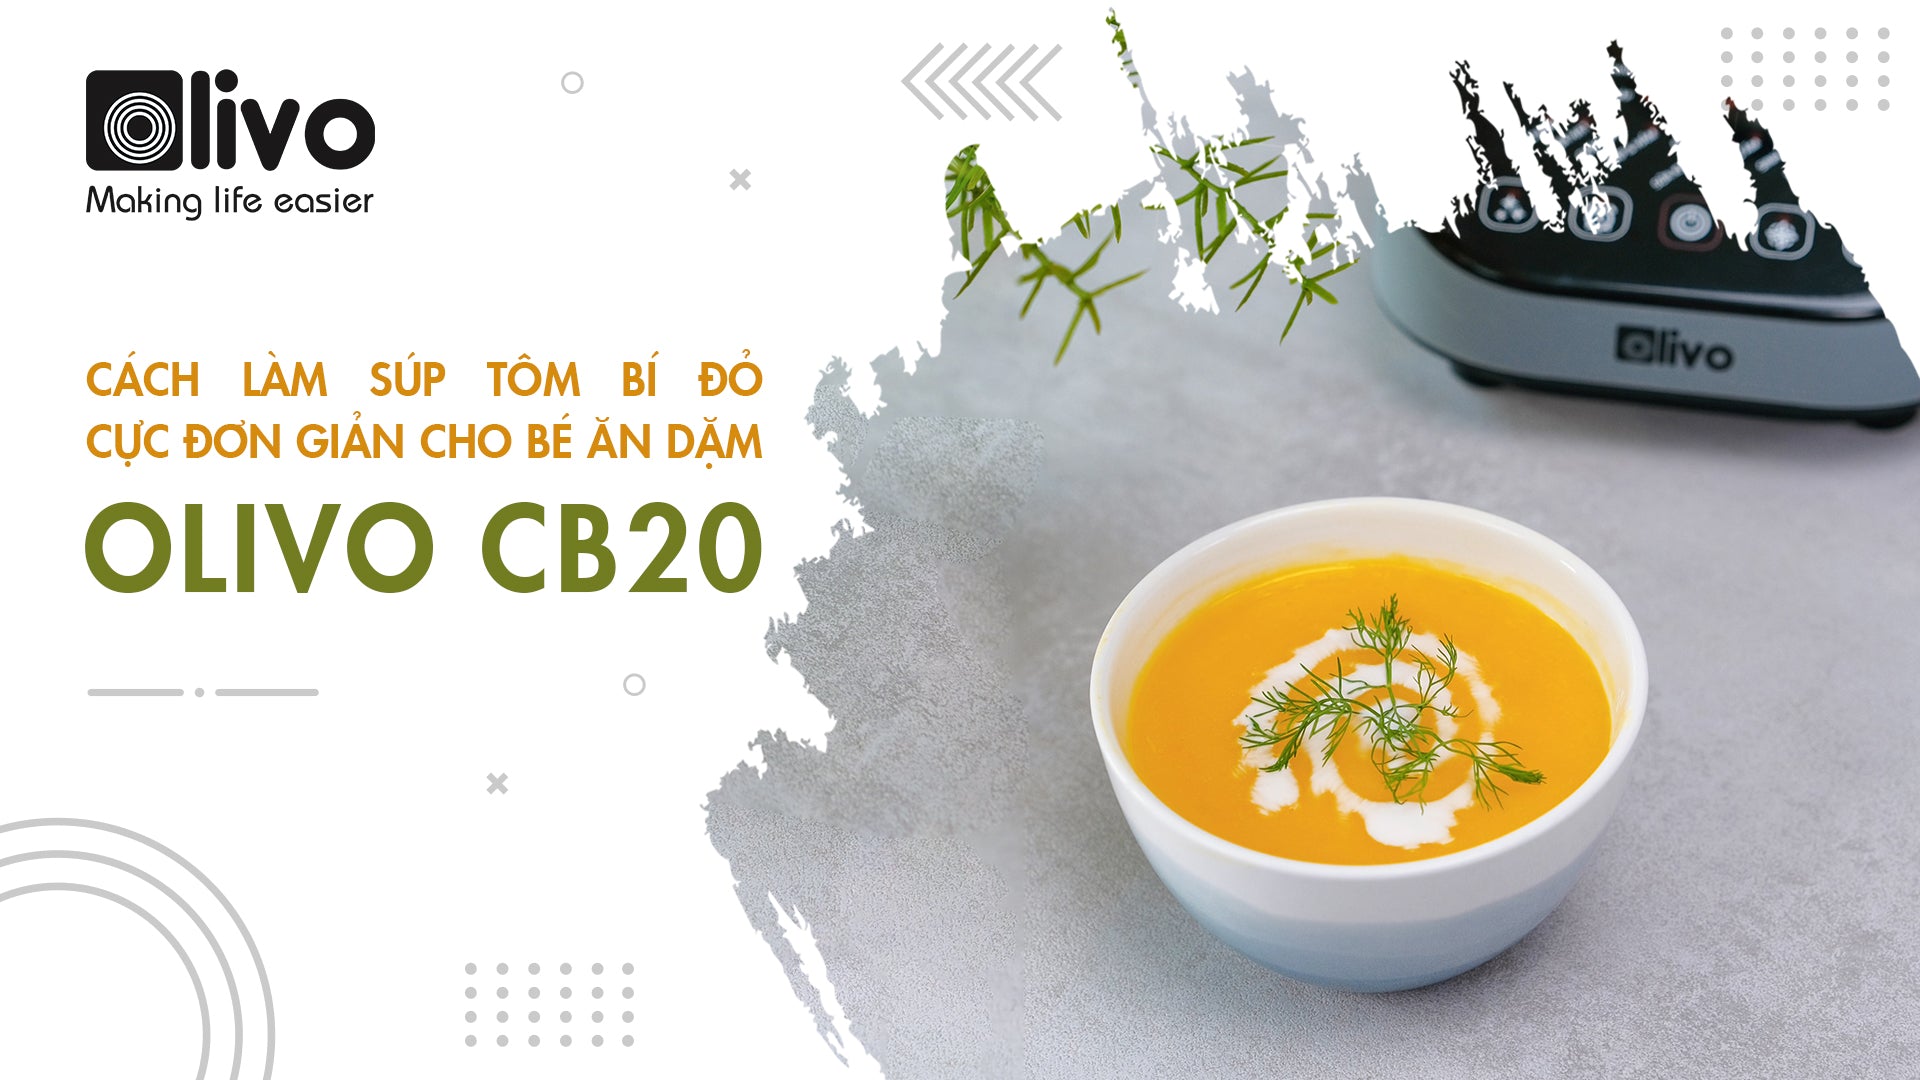 Làm súp tôm bí đỏ thơm ngon, bổ dưỡng cho bé bằng máy xay nấu đa năng OLIVO CB20